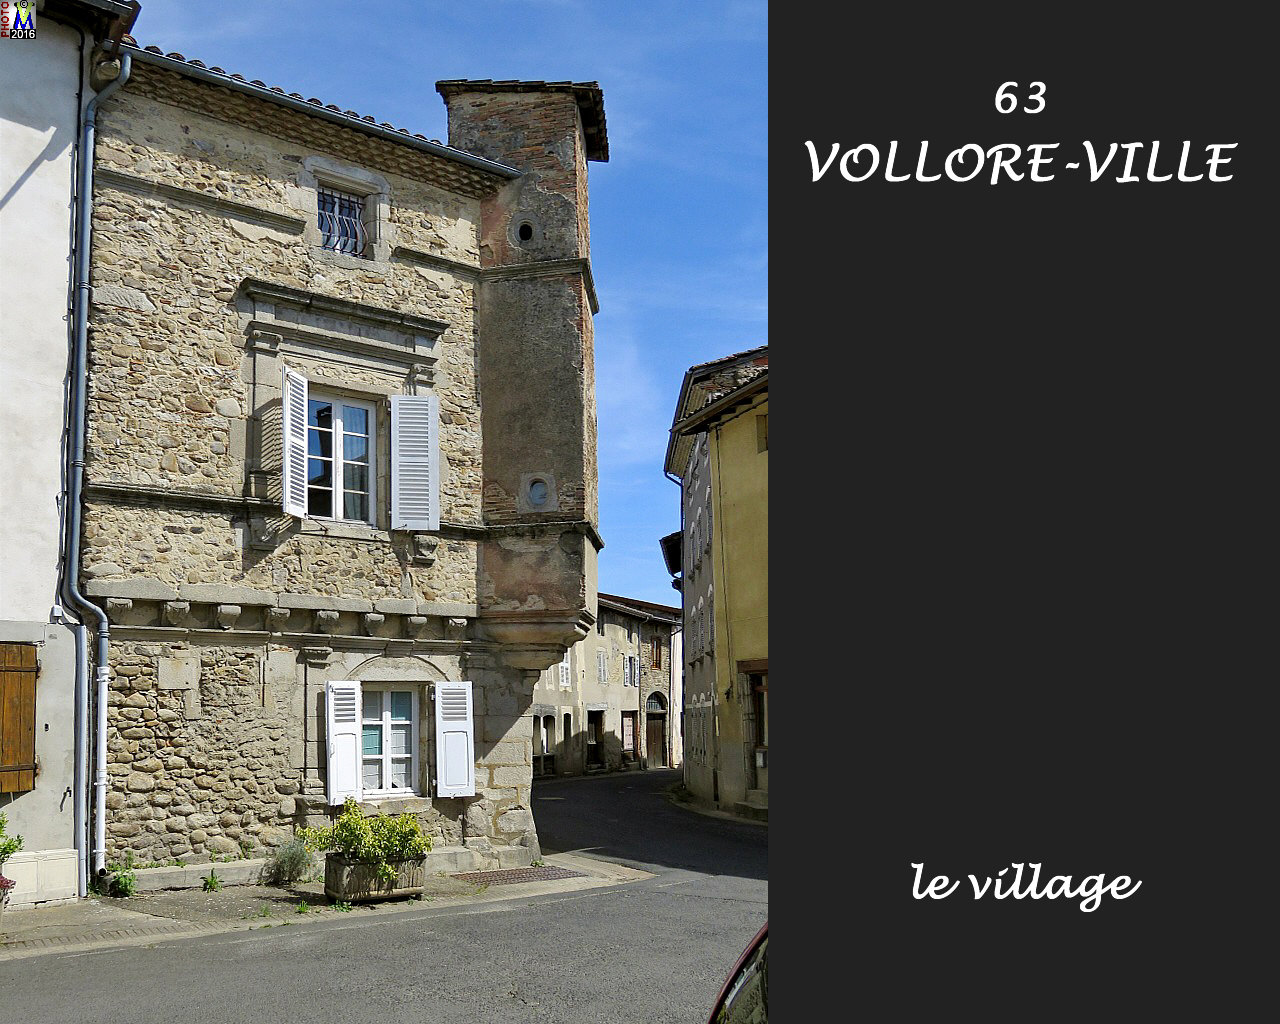 63VOLLORE-VILLE_village_102.jpg